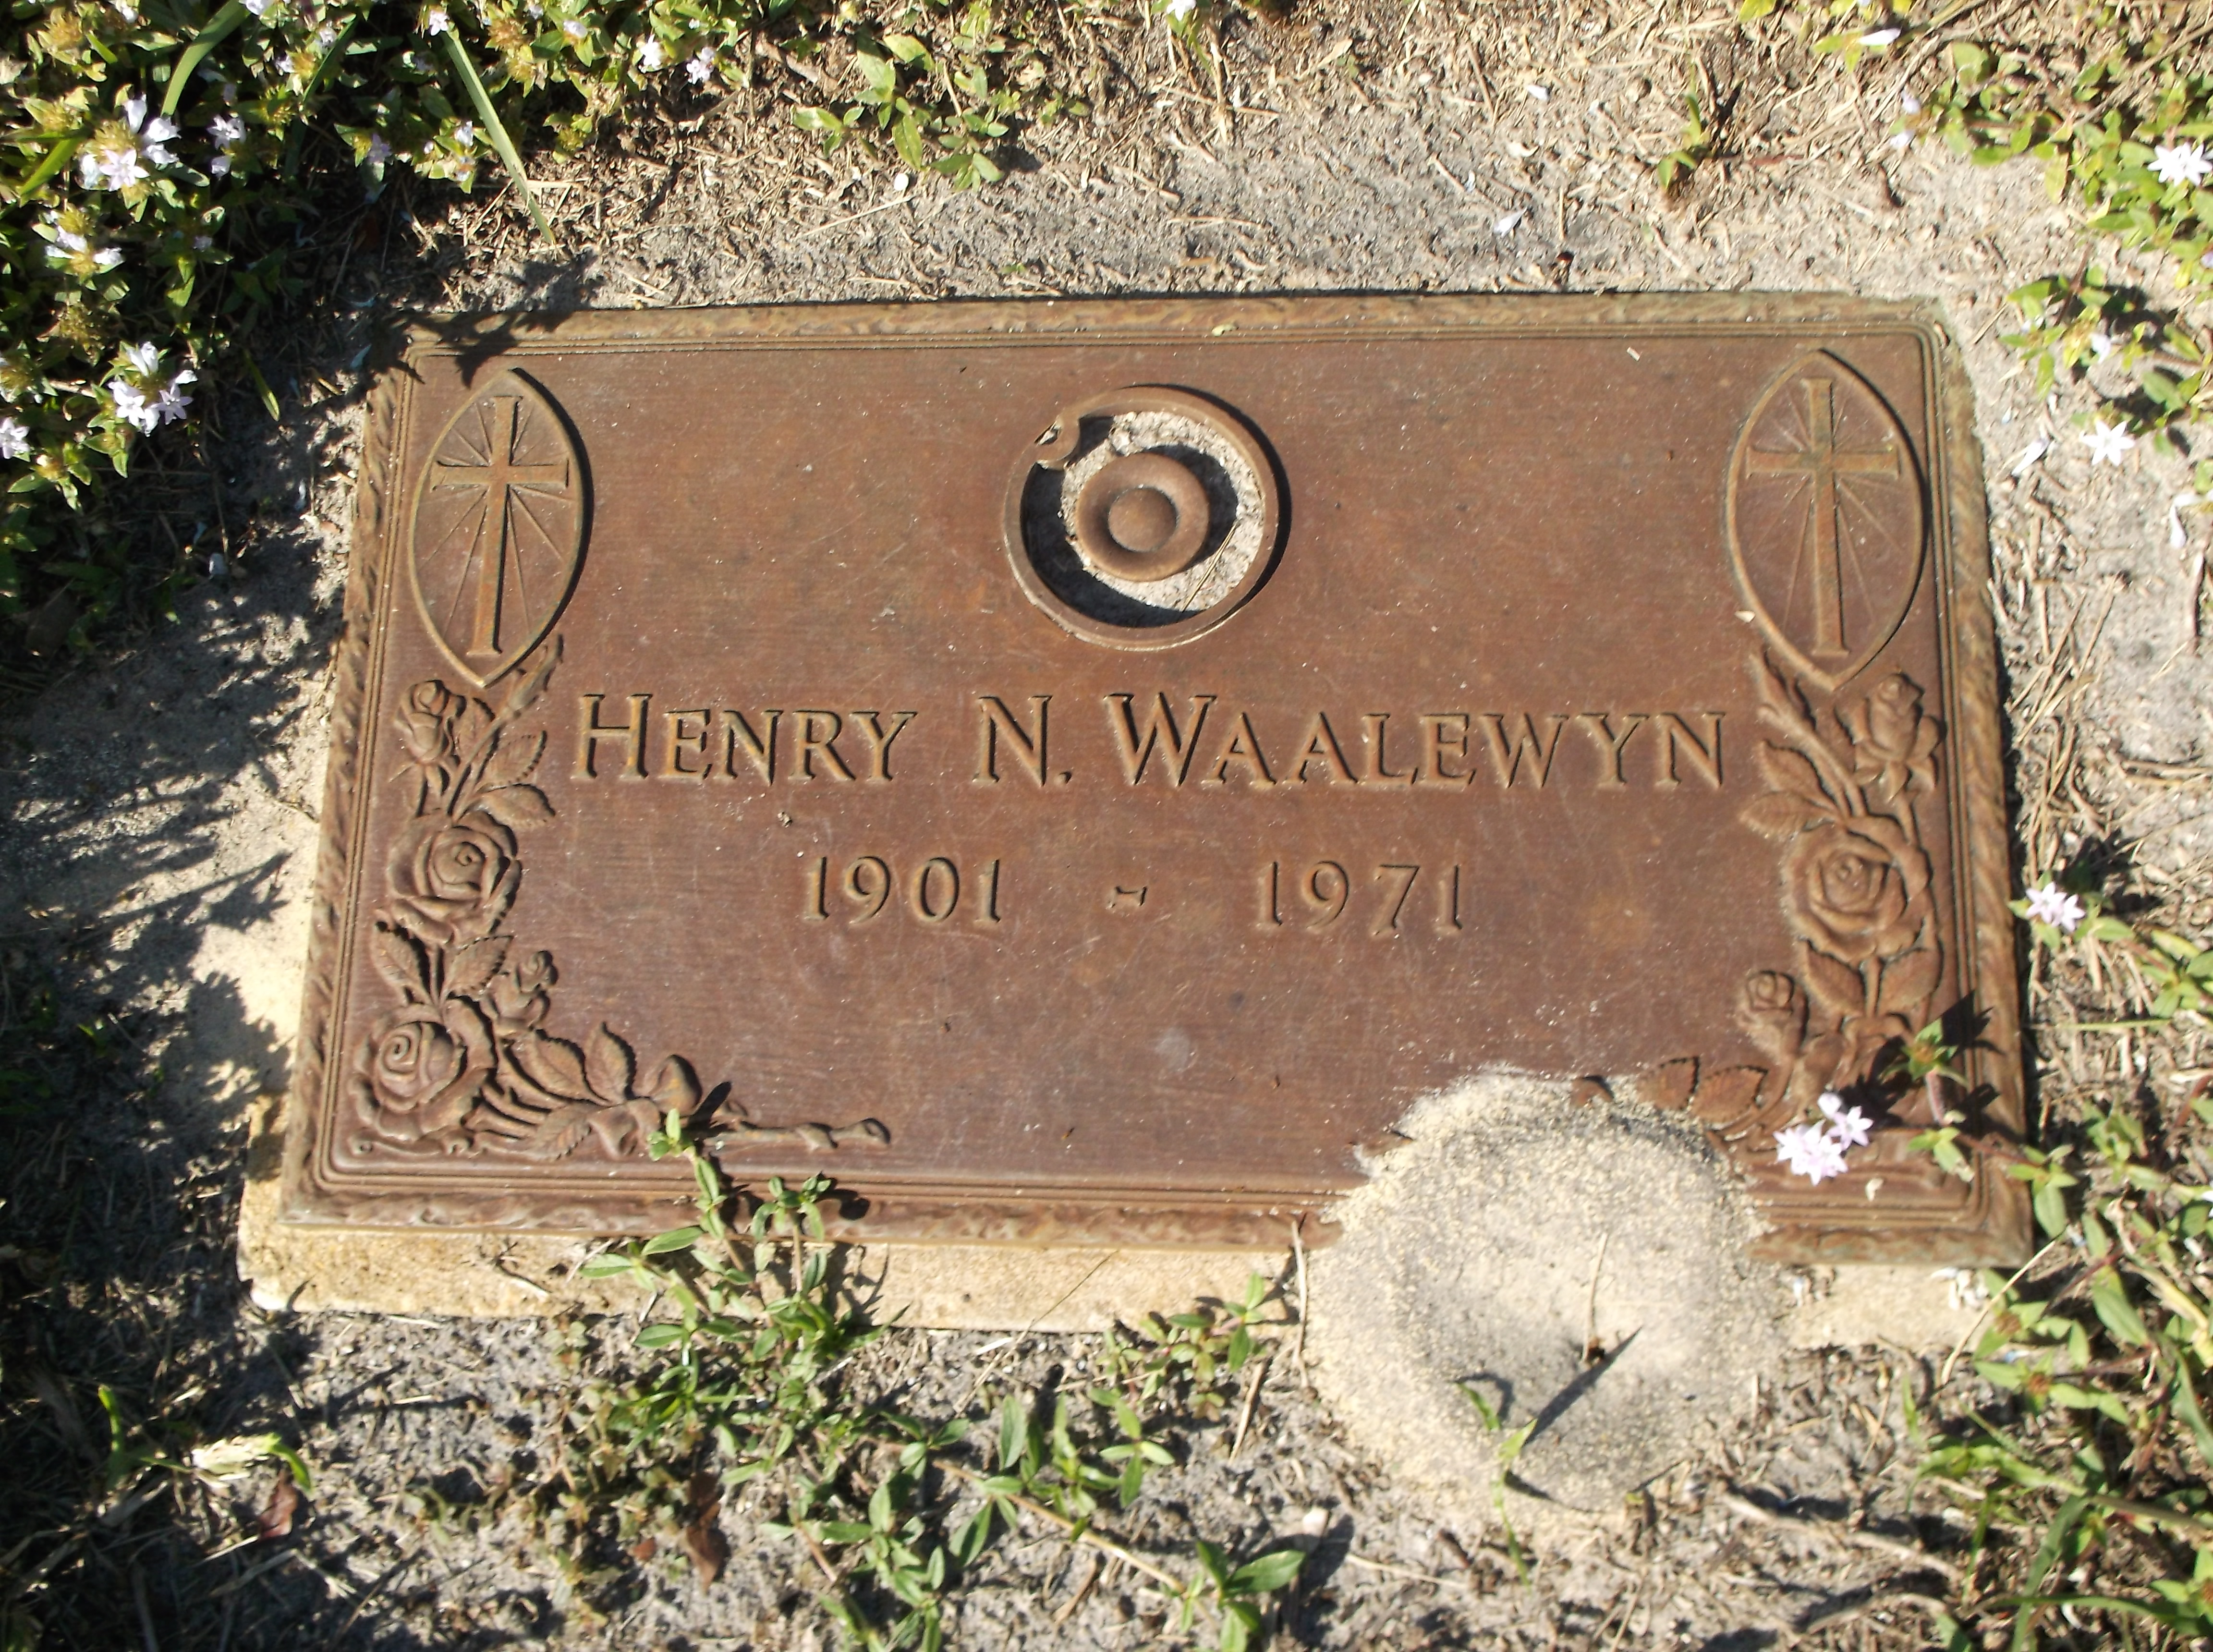 Henry N Waalewyn